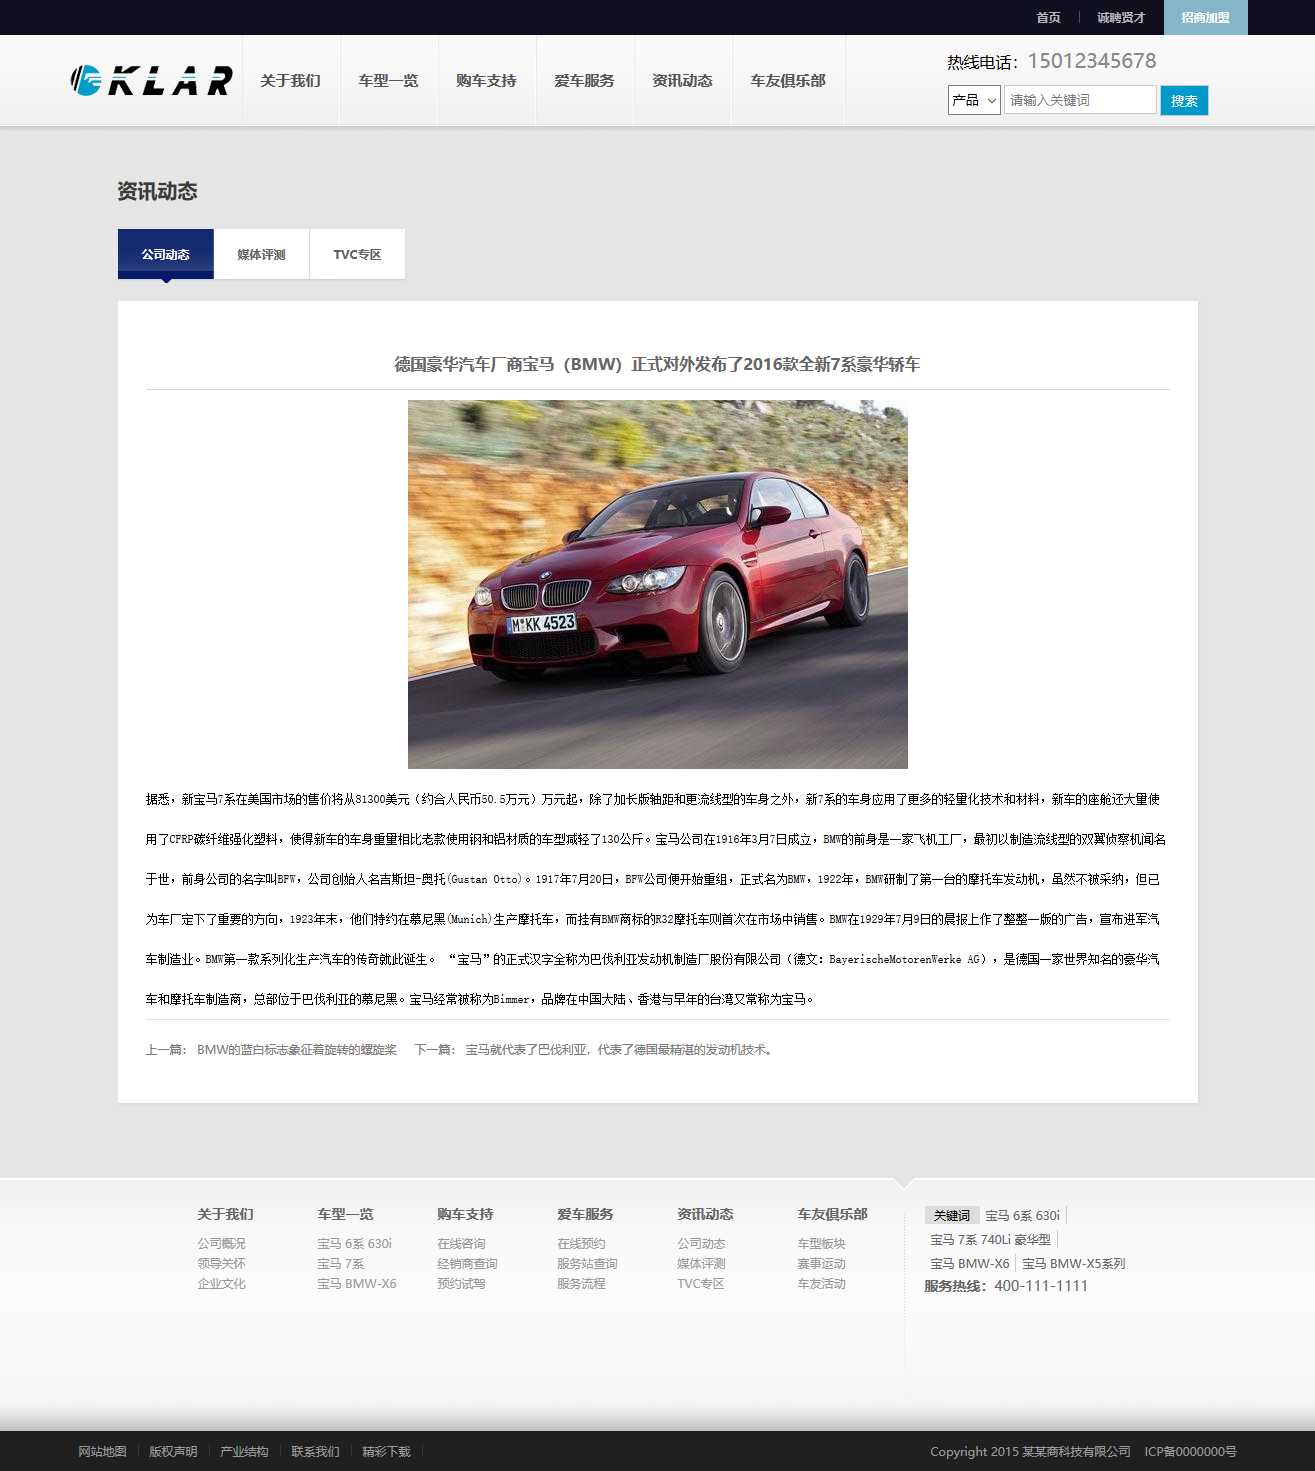 汽车,环保汽车,能源汽车网站图片详情效果图